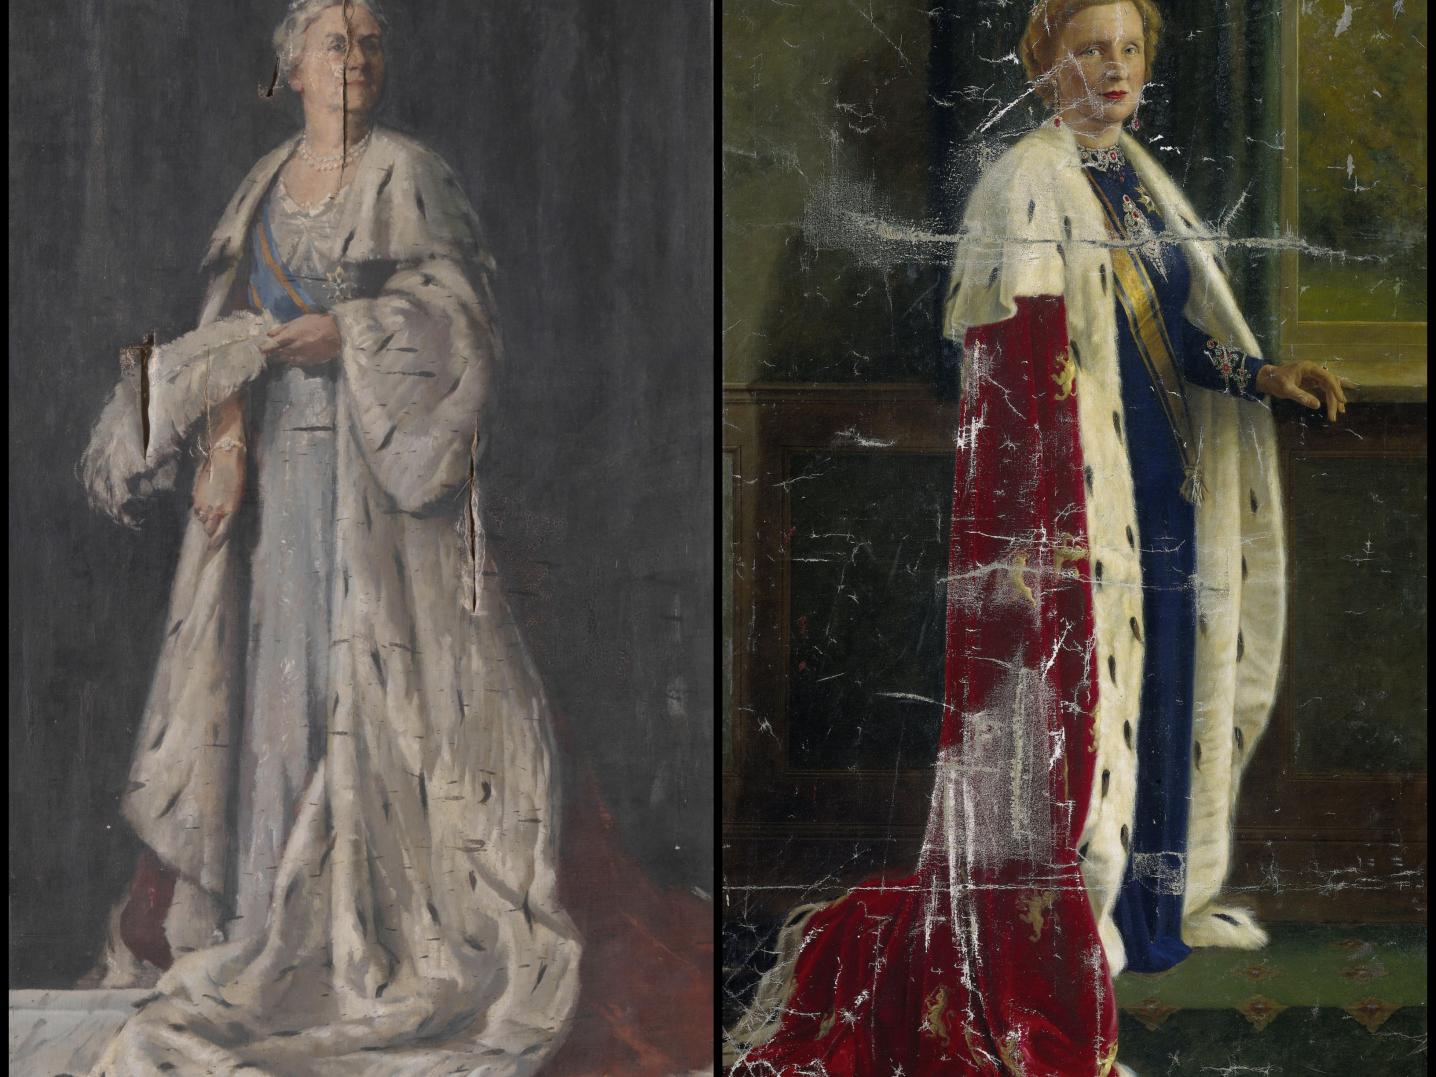 paintings of both Queen Wilhelmina and Queen Juliana